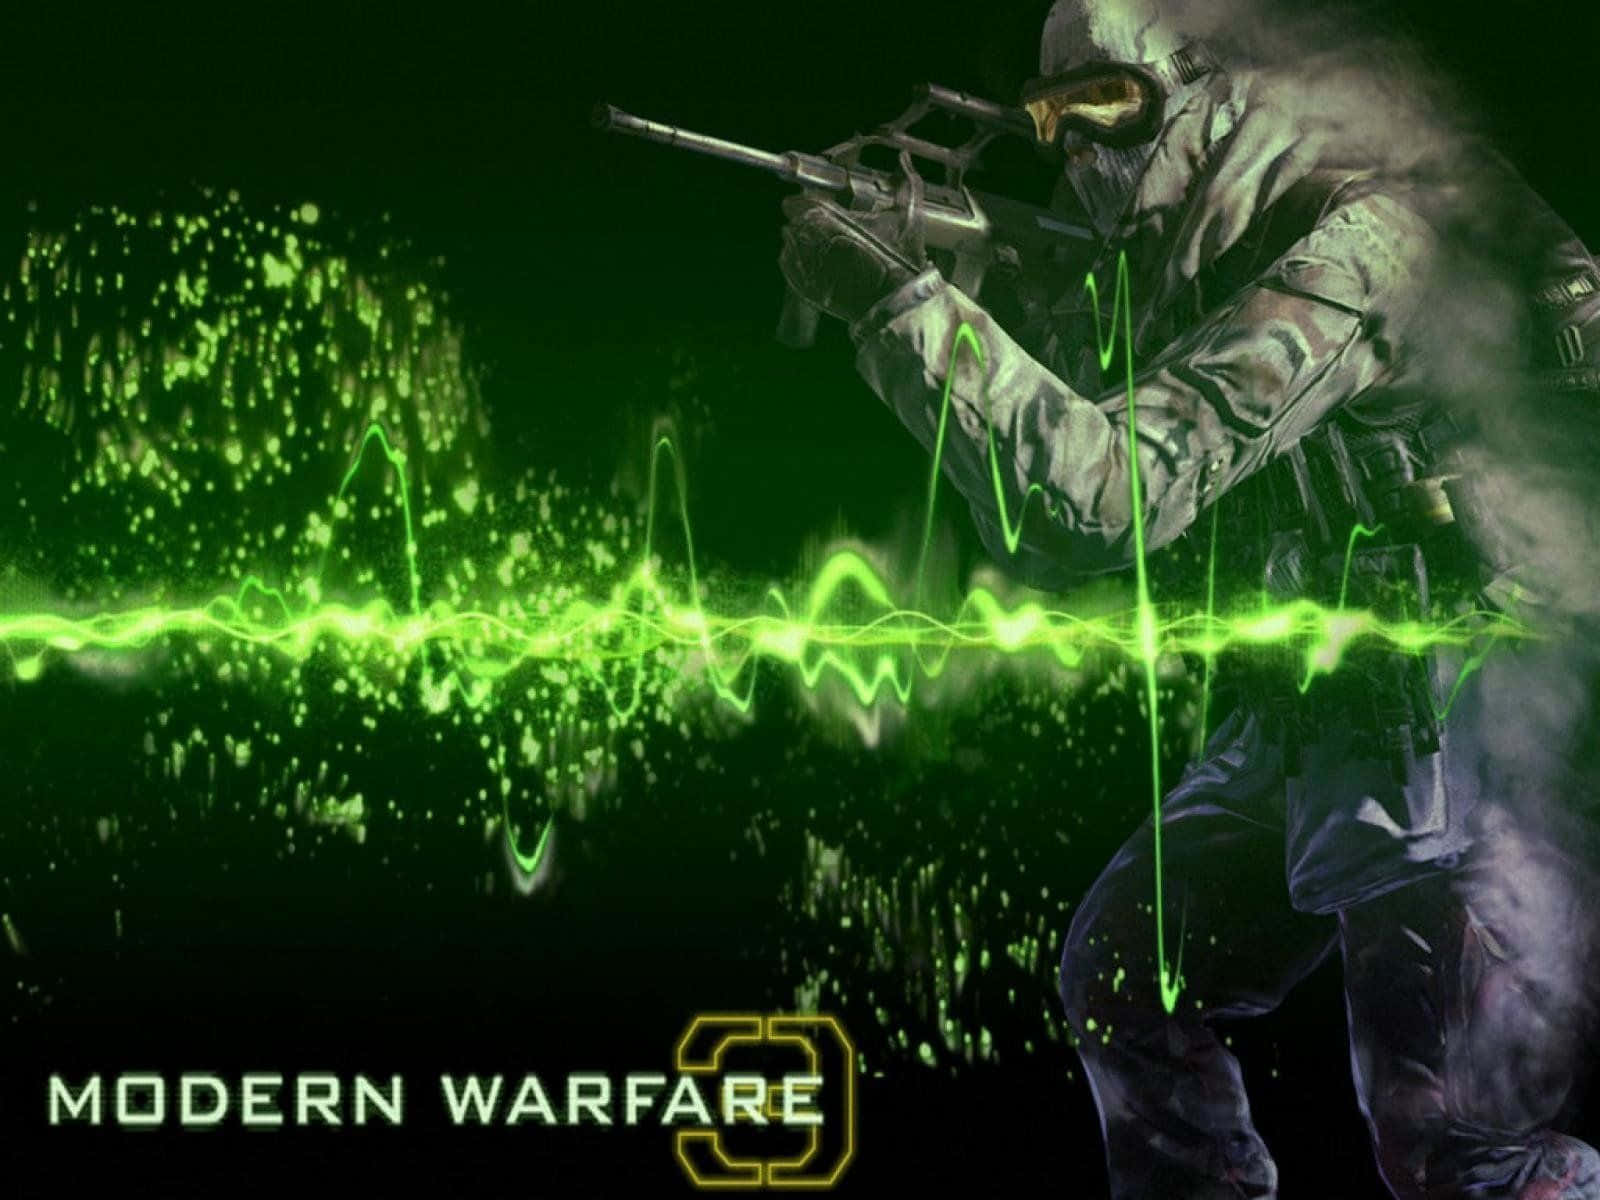 Tasikte Och Förbered Dig För Attack I Call Of Duty Modern Warfare.